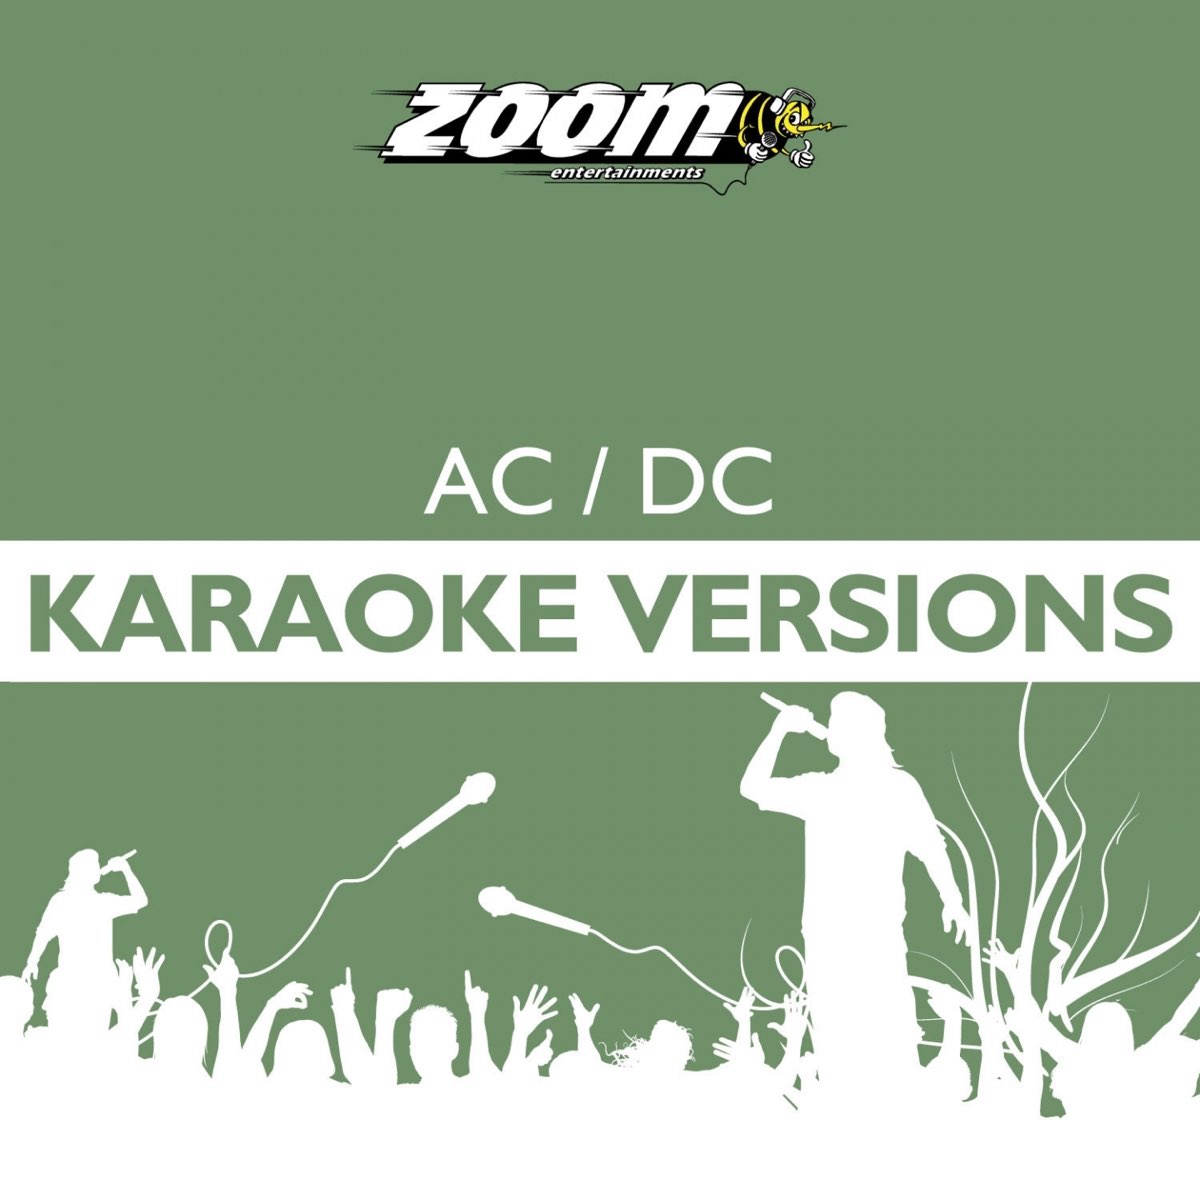 Zoom Karaoke Heroes - AC/ DC - Album by Zoom Karaoke - Apple Music